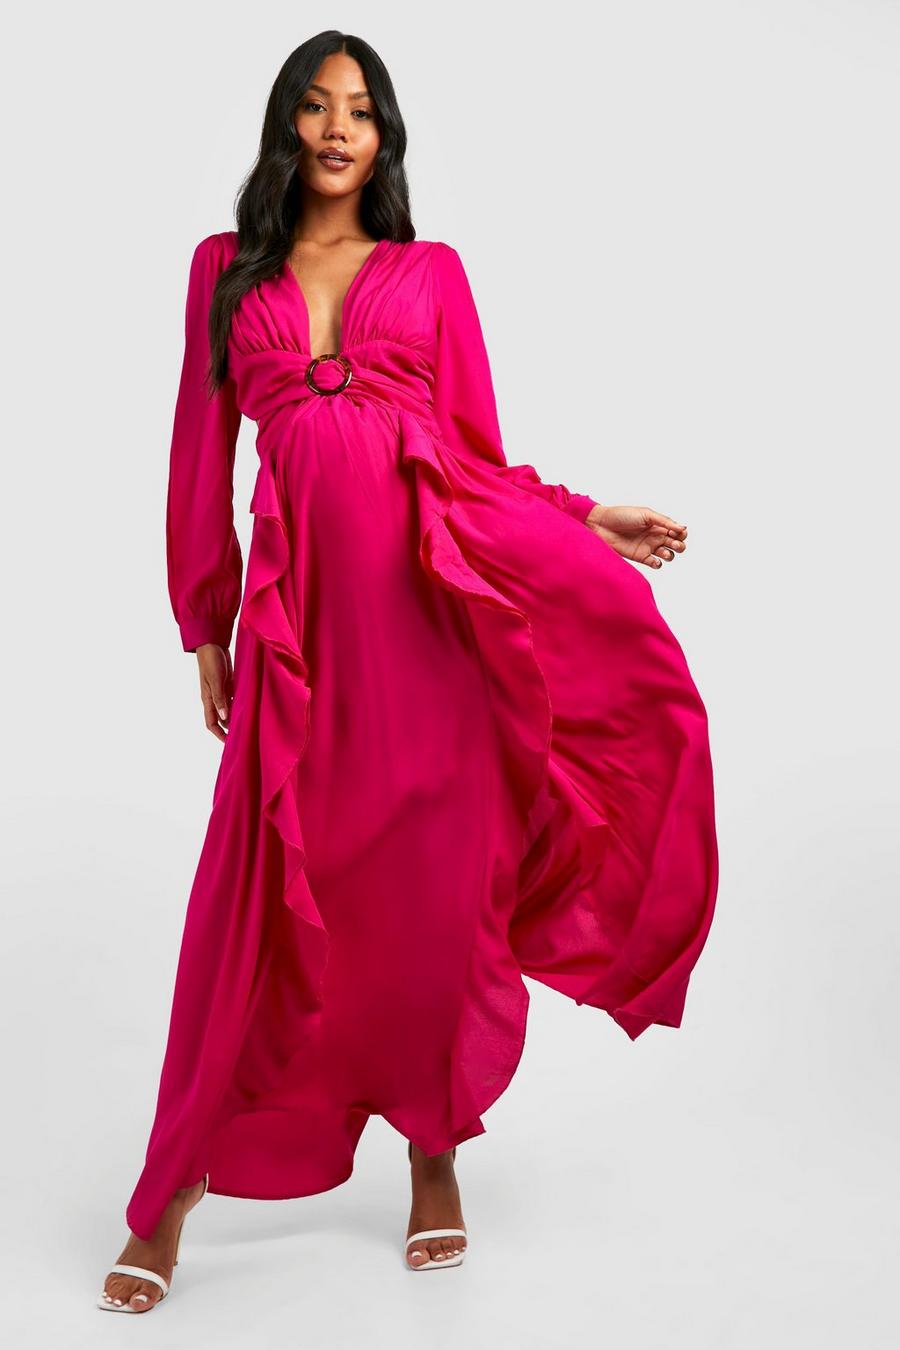 Maternité - Robe de grossesse découpée, Hot pink rosa